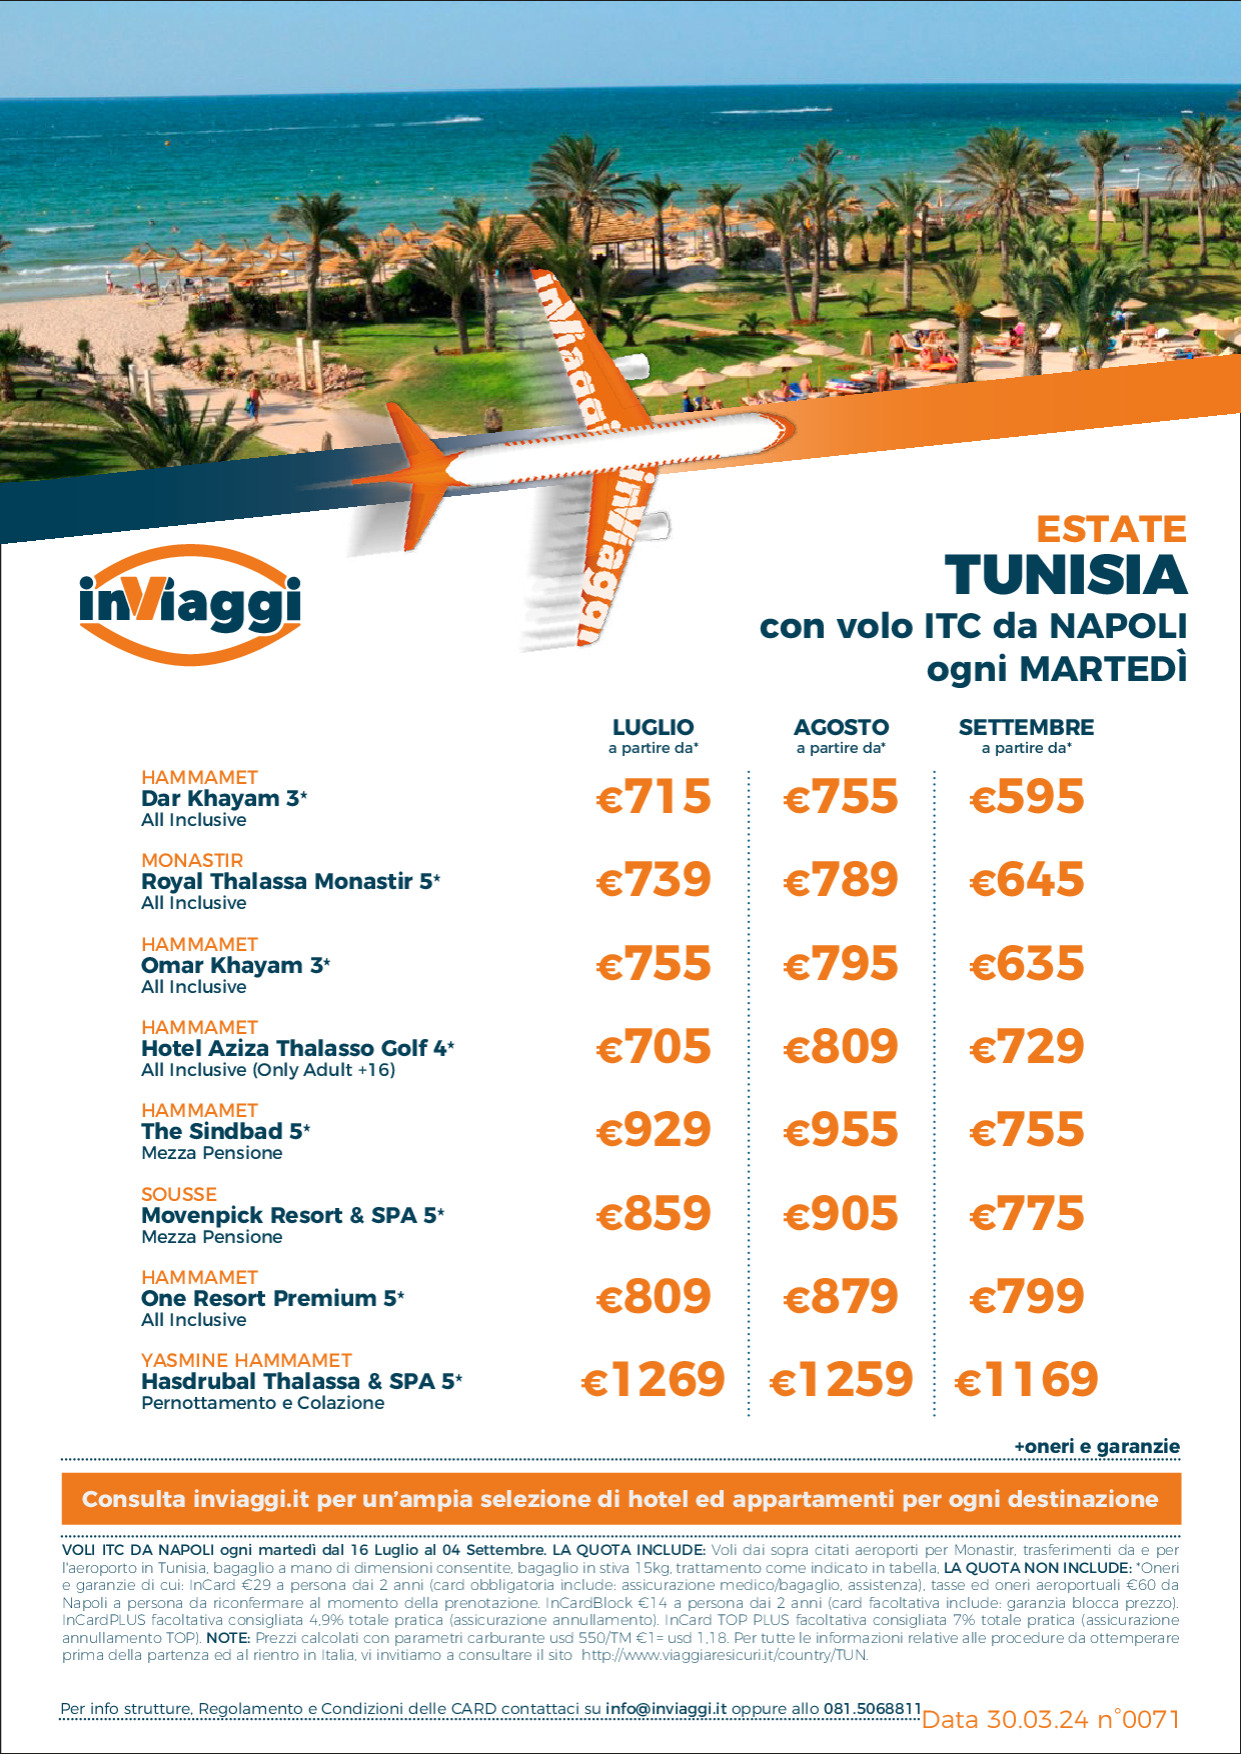 Tunisia - con volo ITC da Napoli